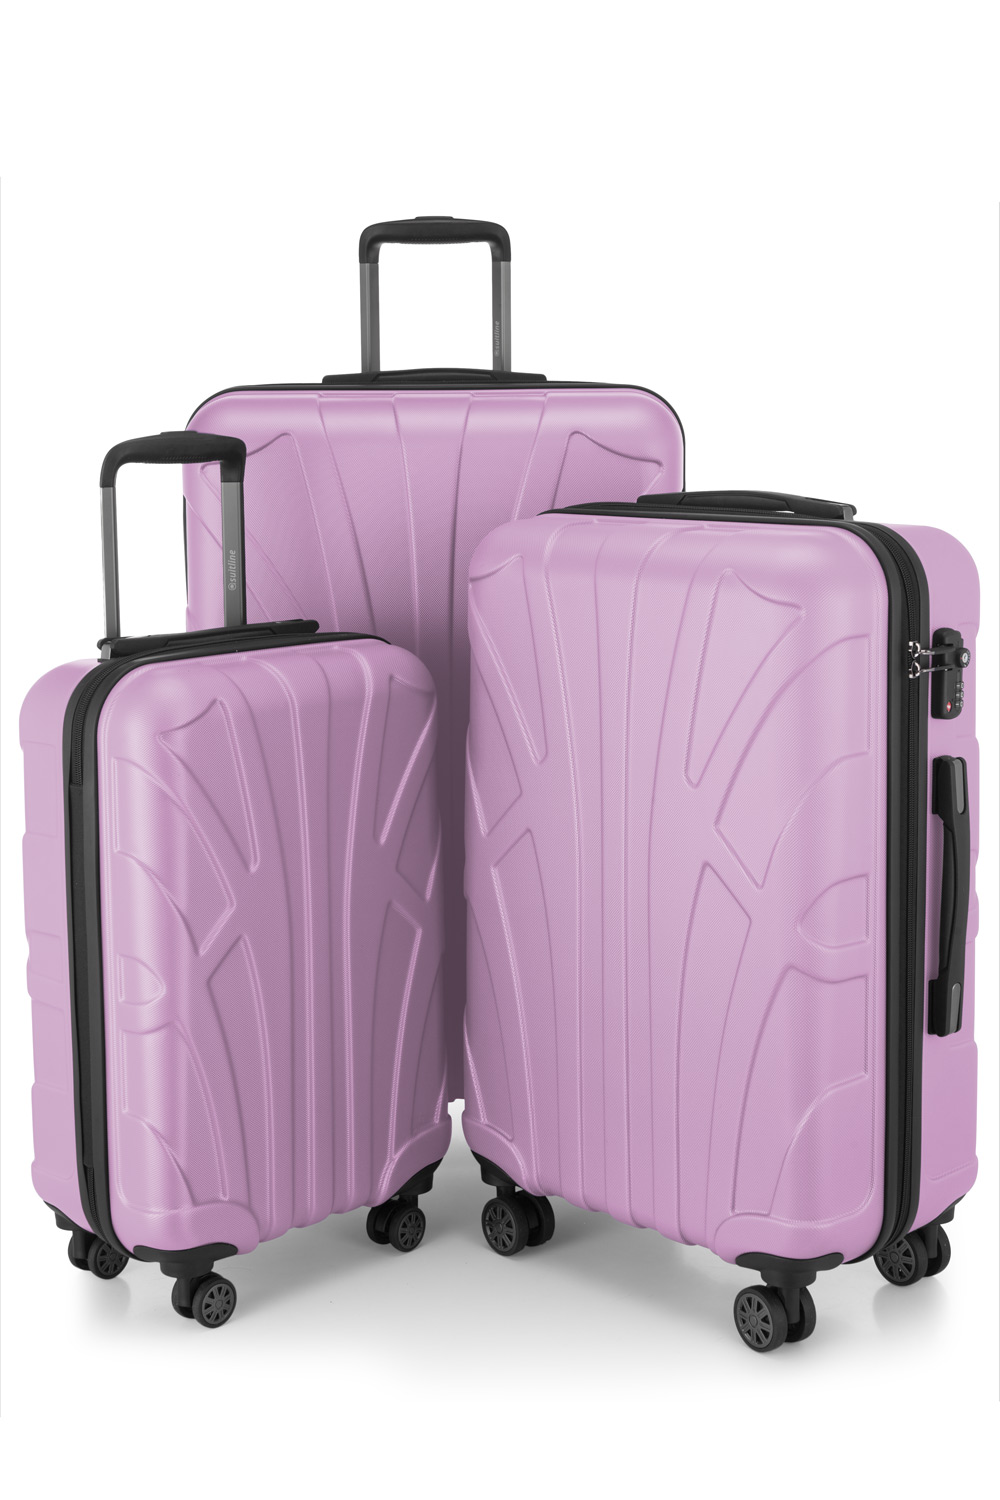 Kofferset 3 teilig, Hartschale ABS, Koffergrößen S/M/L, TSA-Zahlenschloss -  Flieder